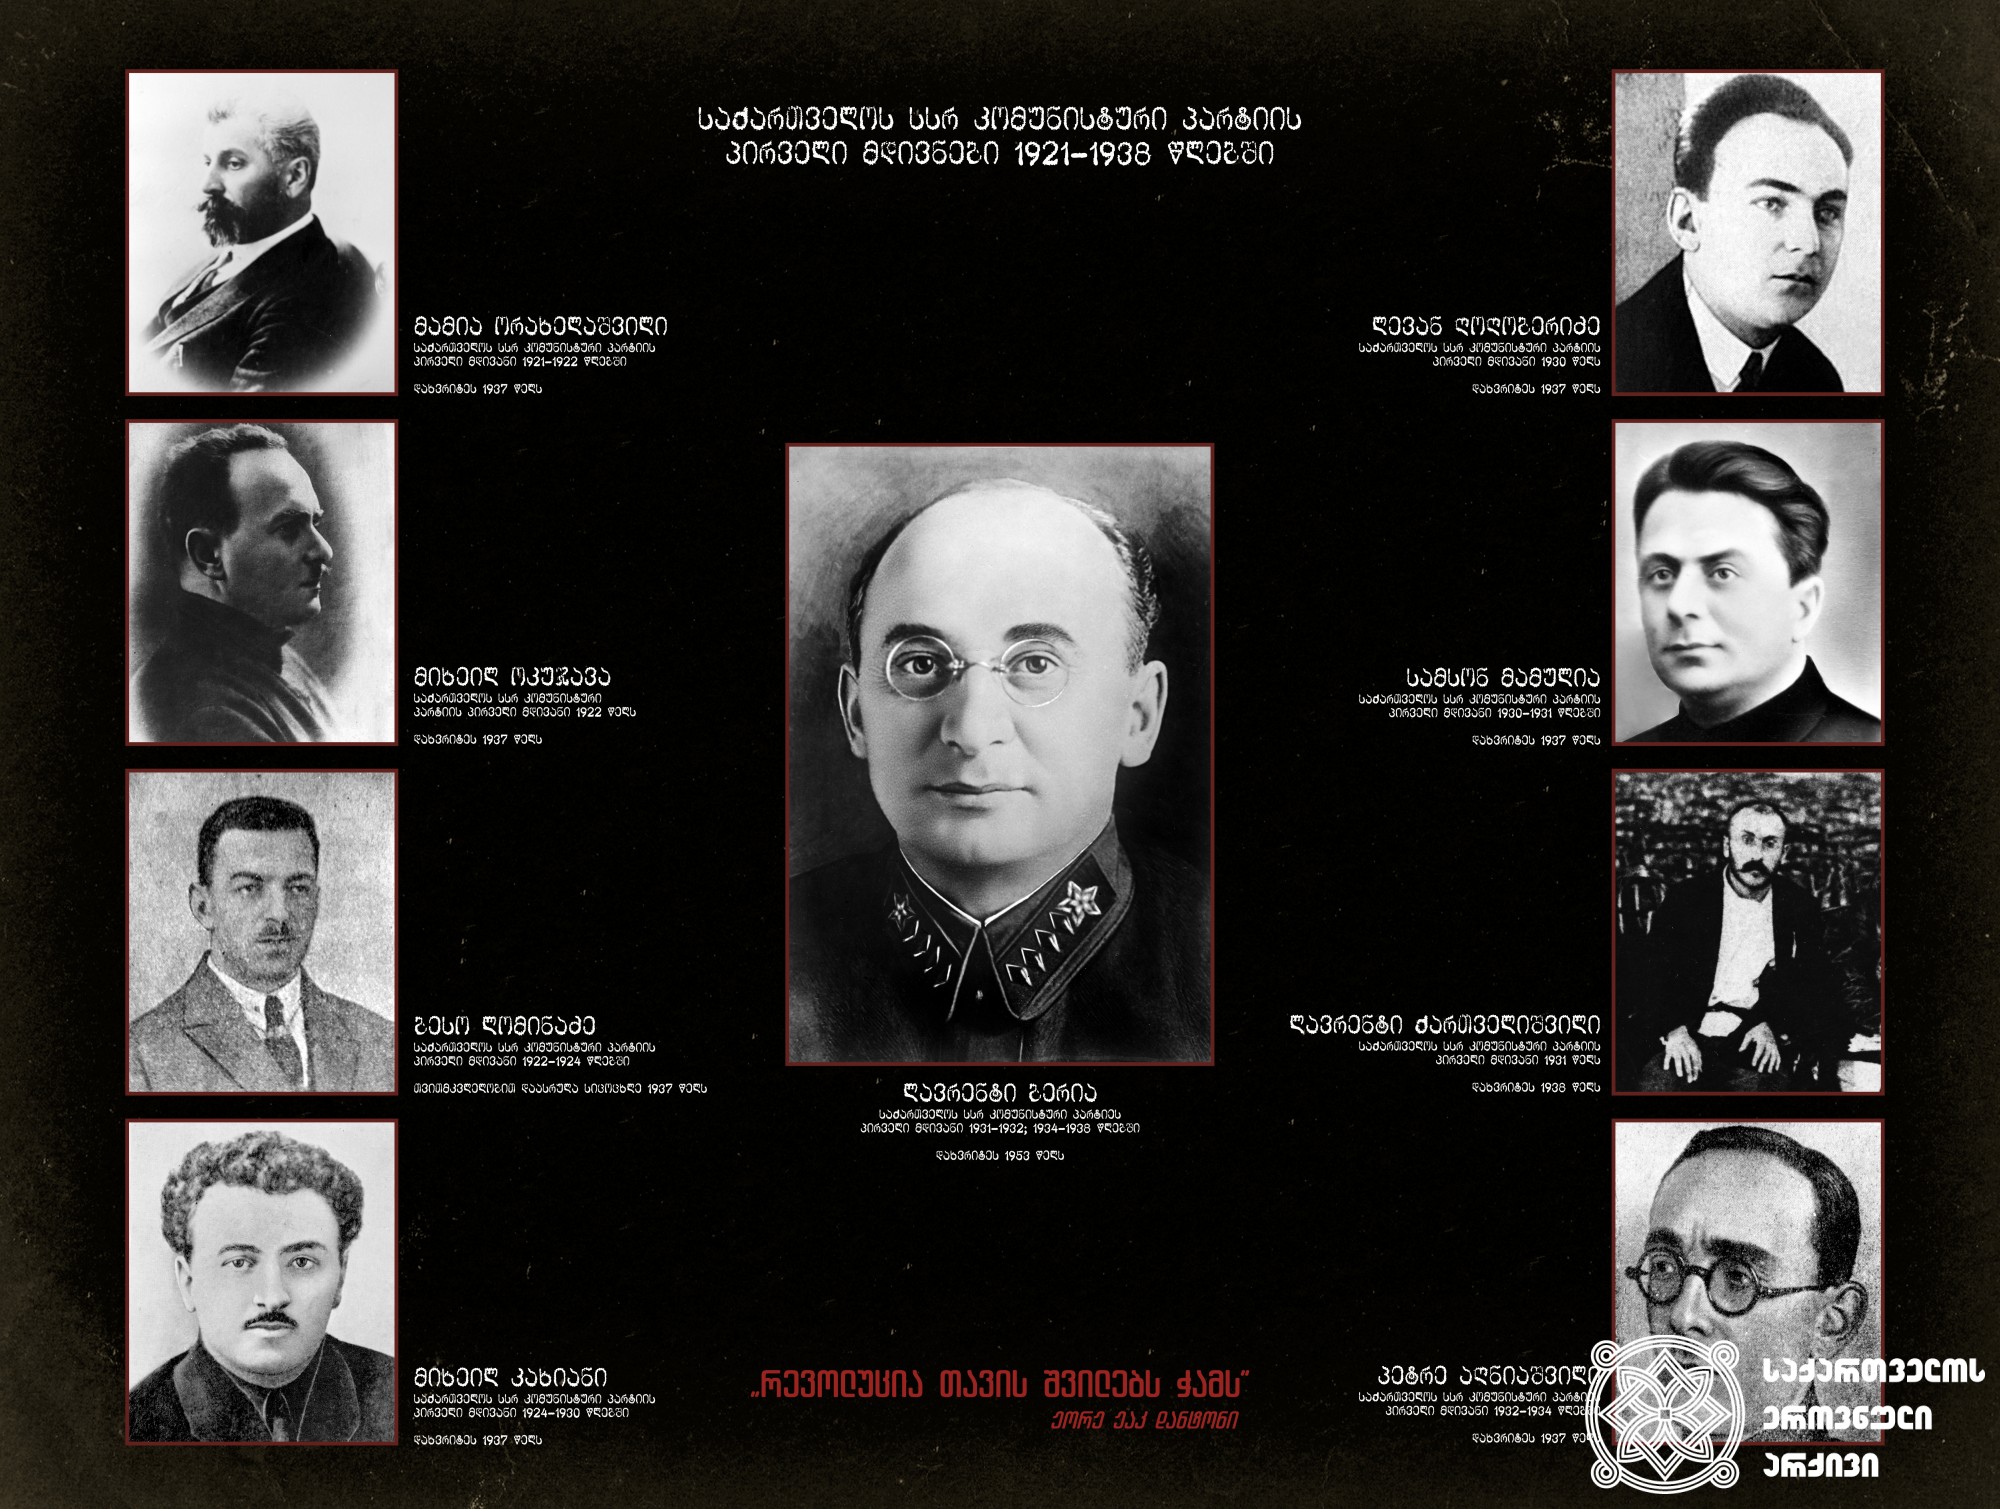 საქართველოს სსრ კომუნისტური პარტიის პირველი მდივნები 1921-1938 წლებში. <br>First Secretaries of the Communist Party of Georgian SSR, 1921-1938.